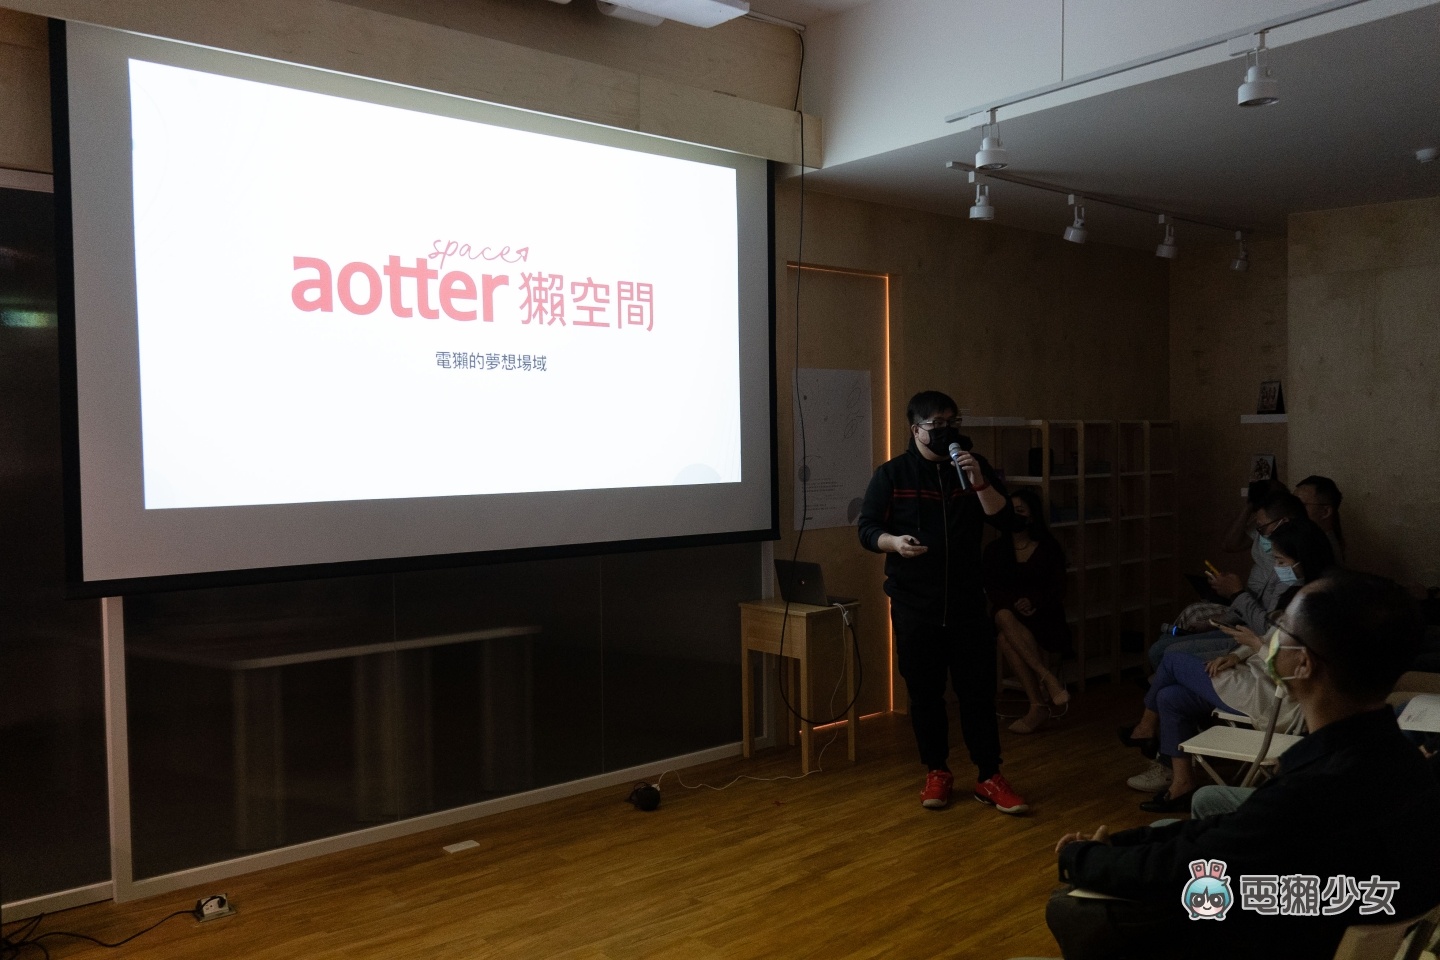 電獺全面升級 AotterTrek 服務！推出全新顧客數據平台，達到更有效的廣告宣傳效果！